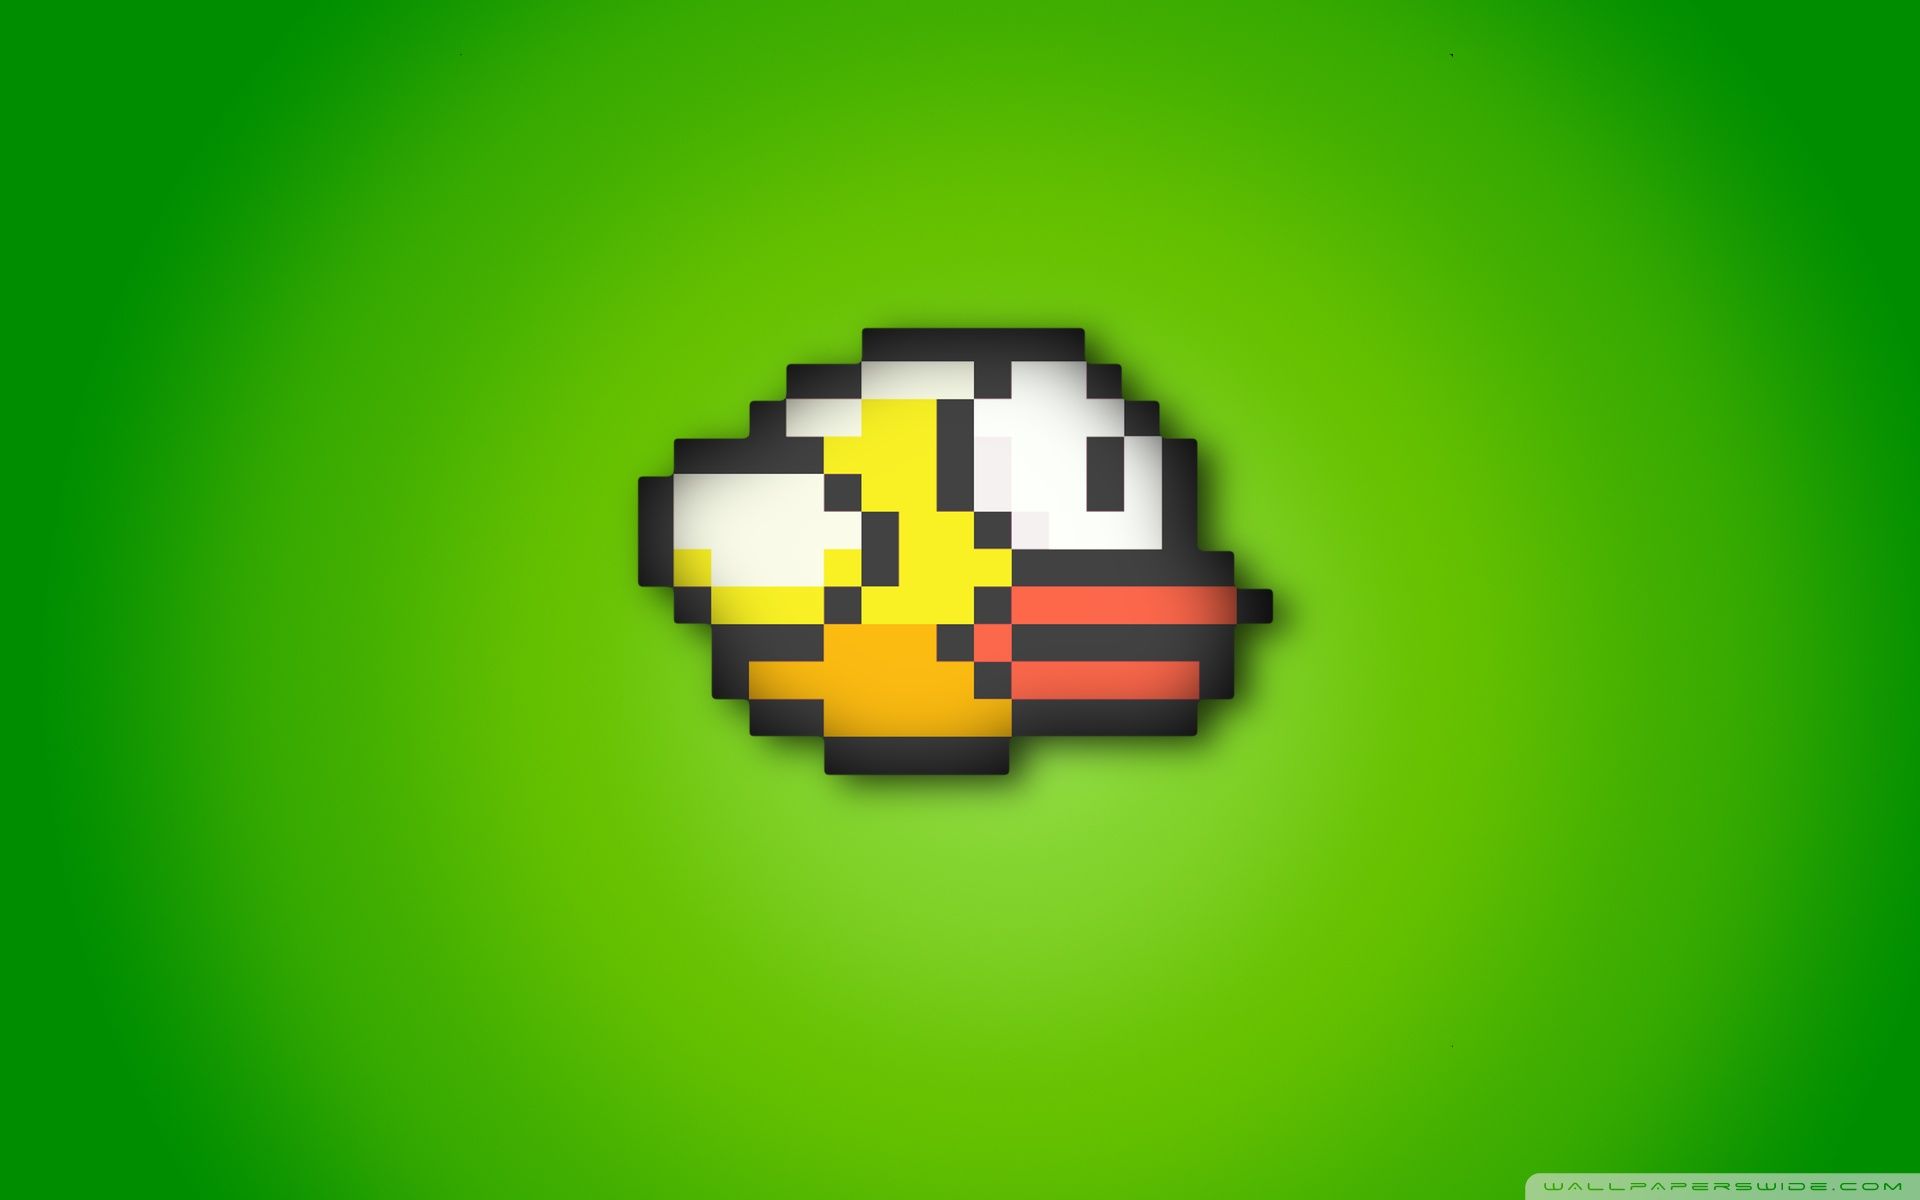 jogar flappy bird online